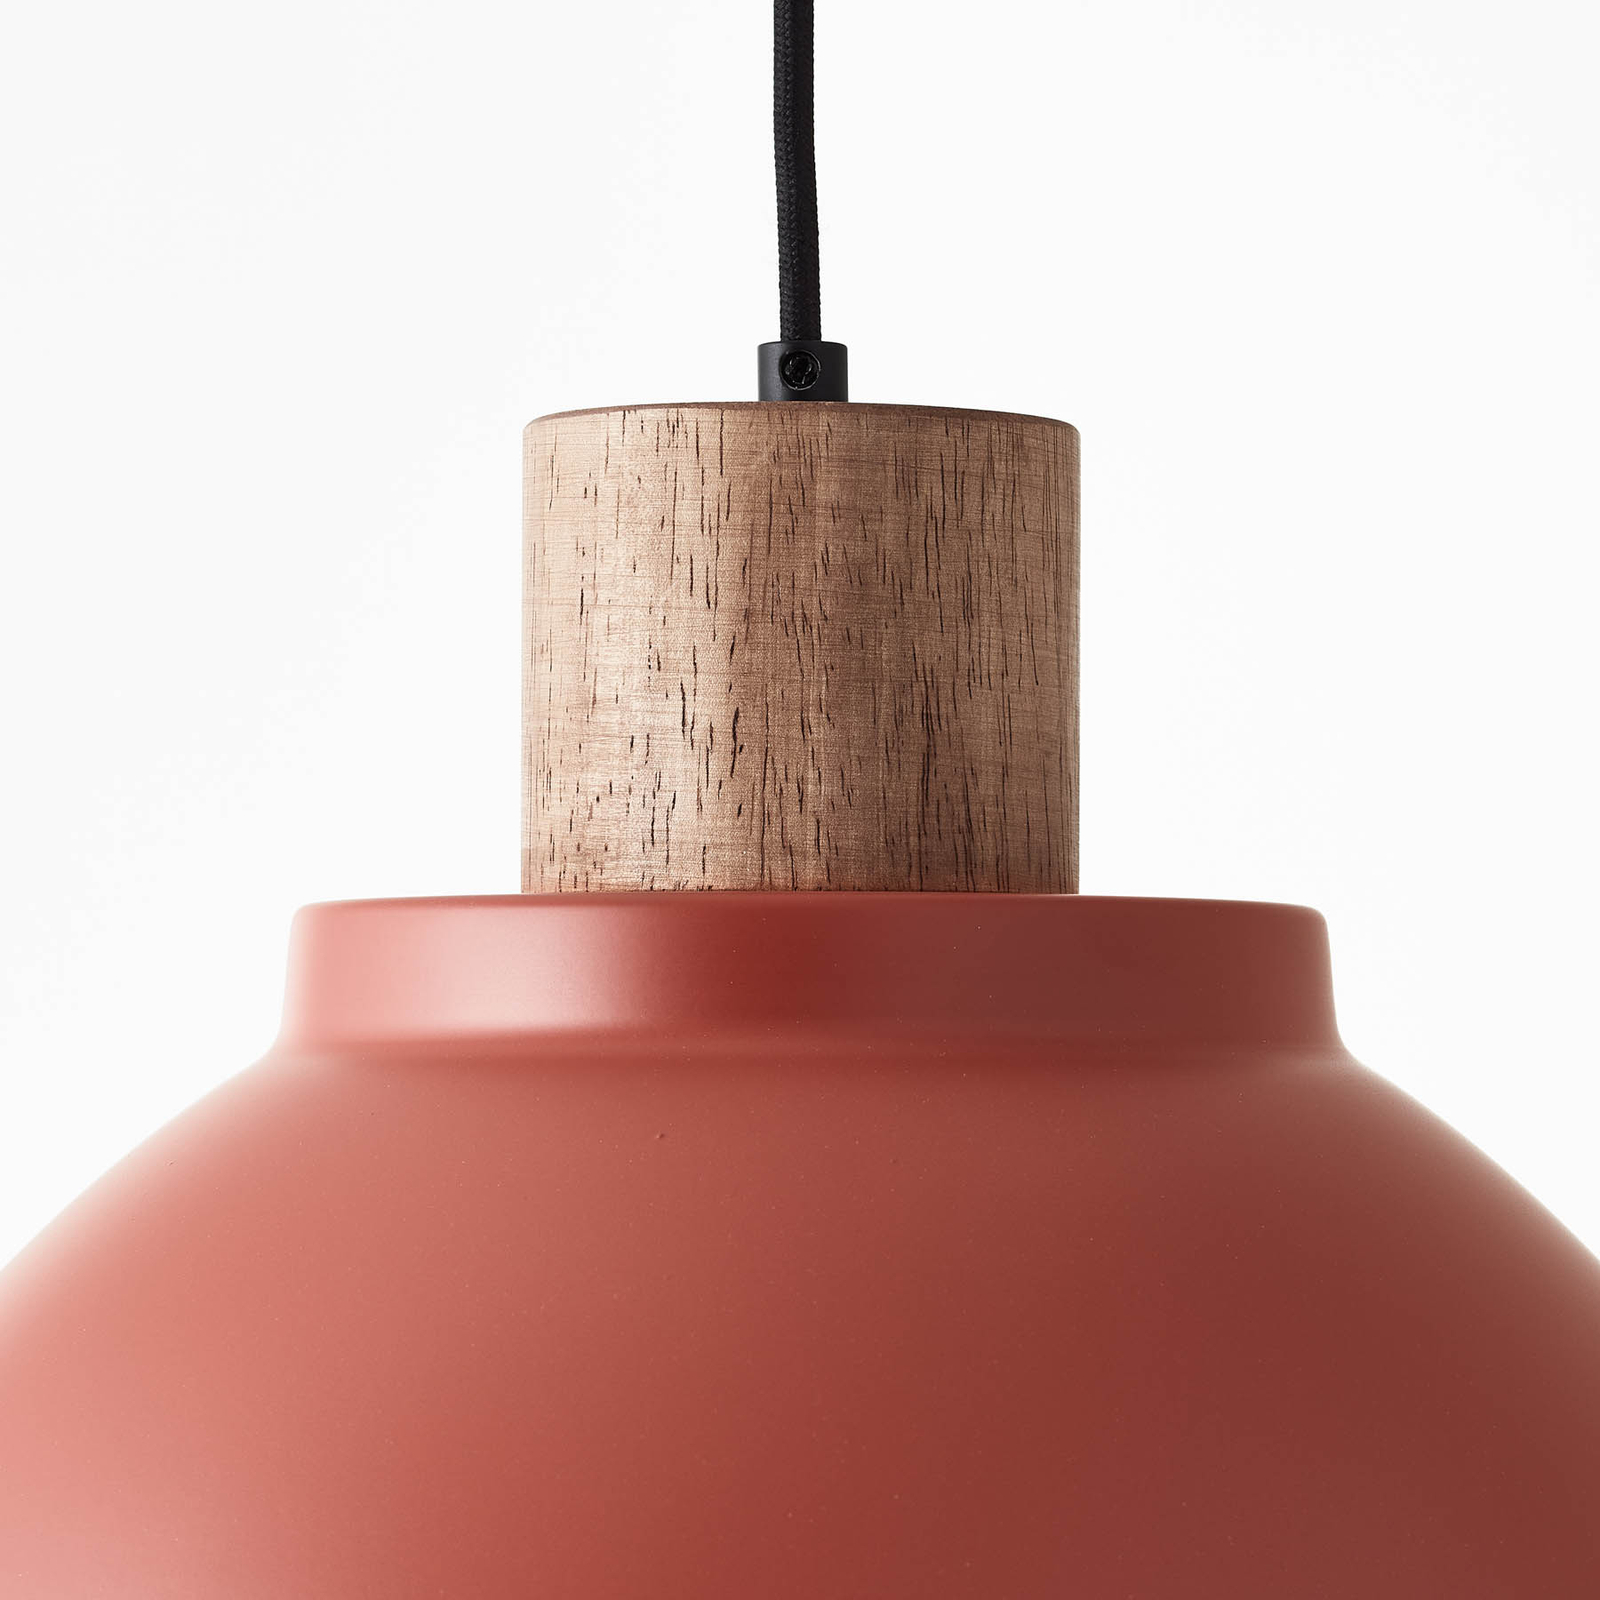 Hanglamp Erena met houtdetail, rood